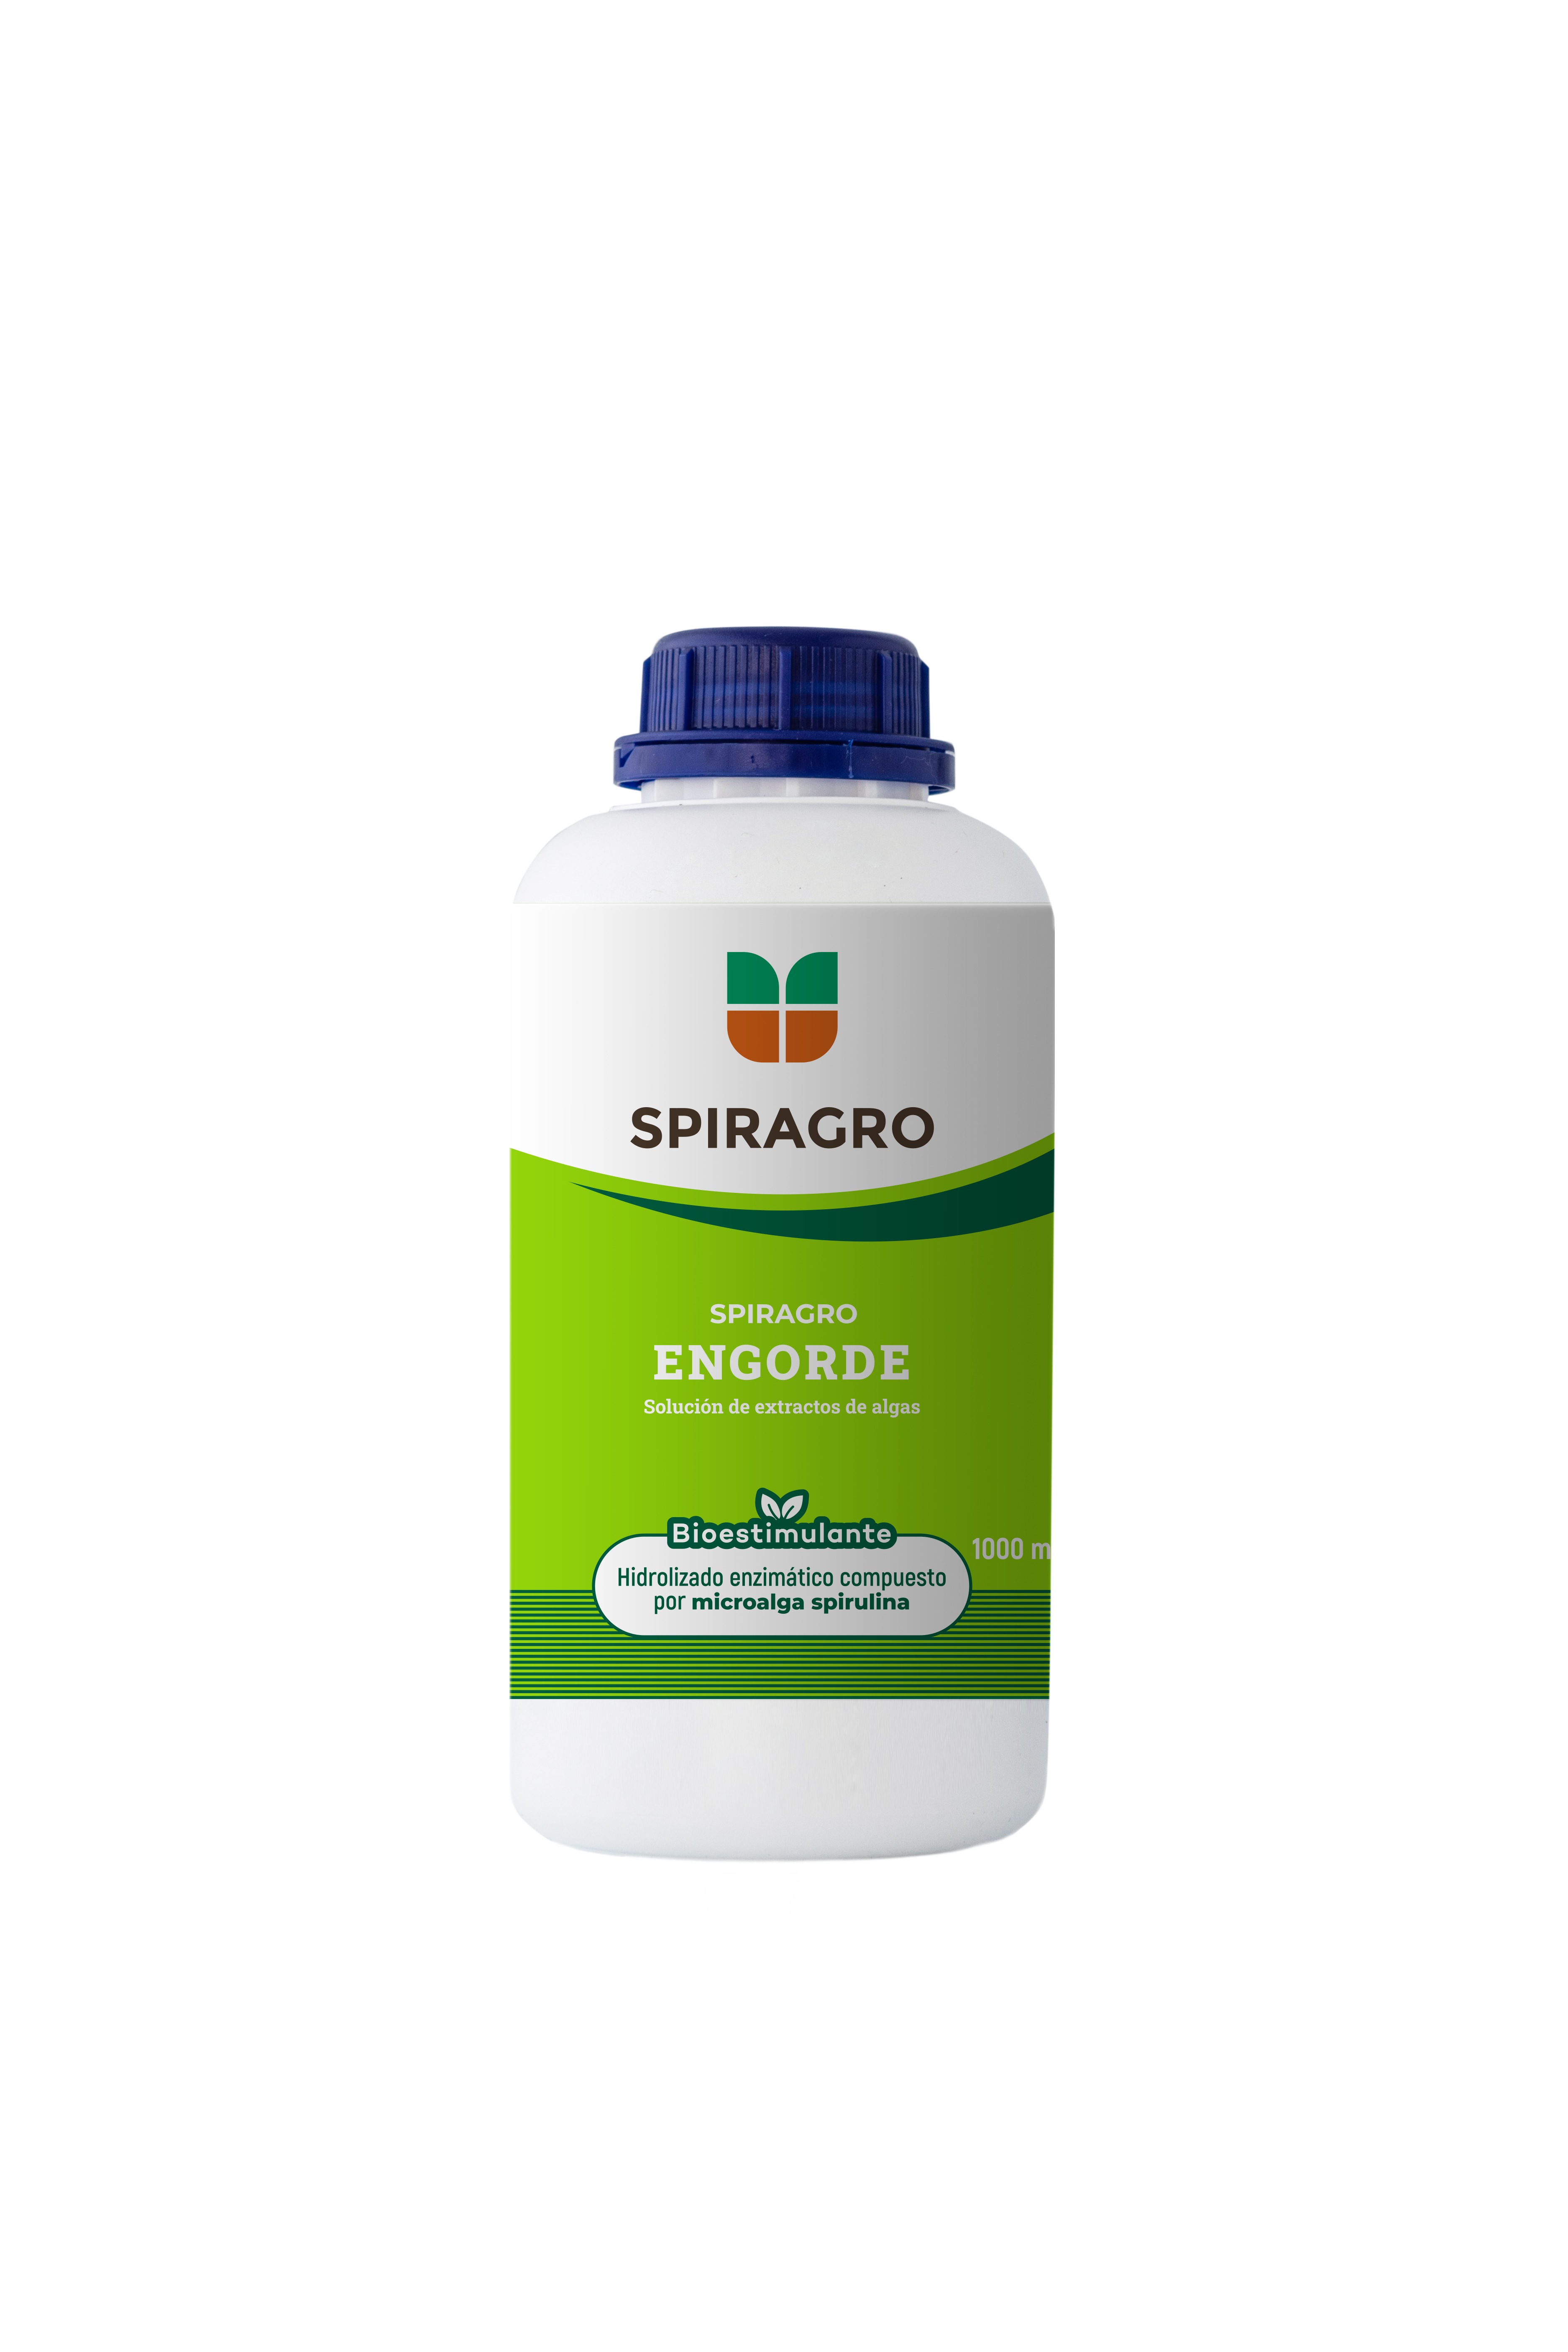 Spiragro Engorde - Bioestimulante para el cuajado